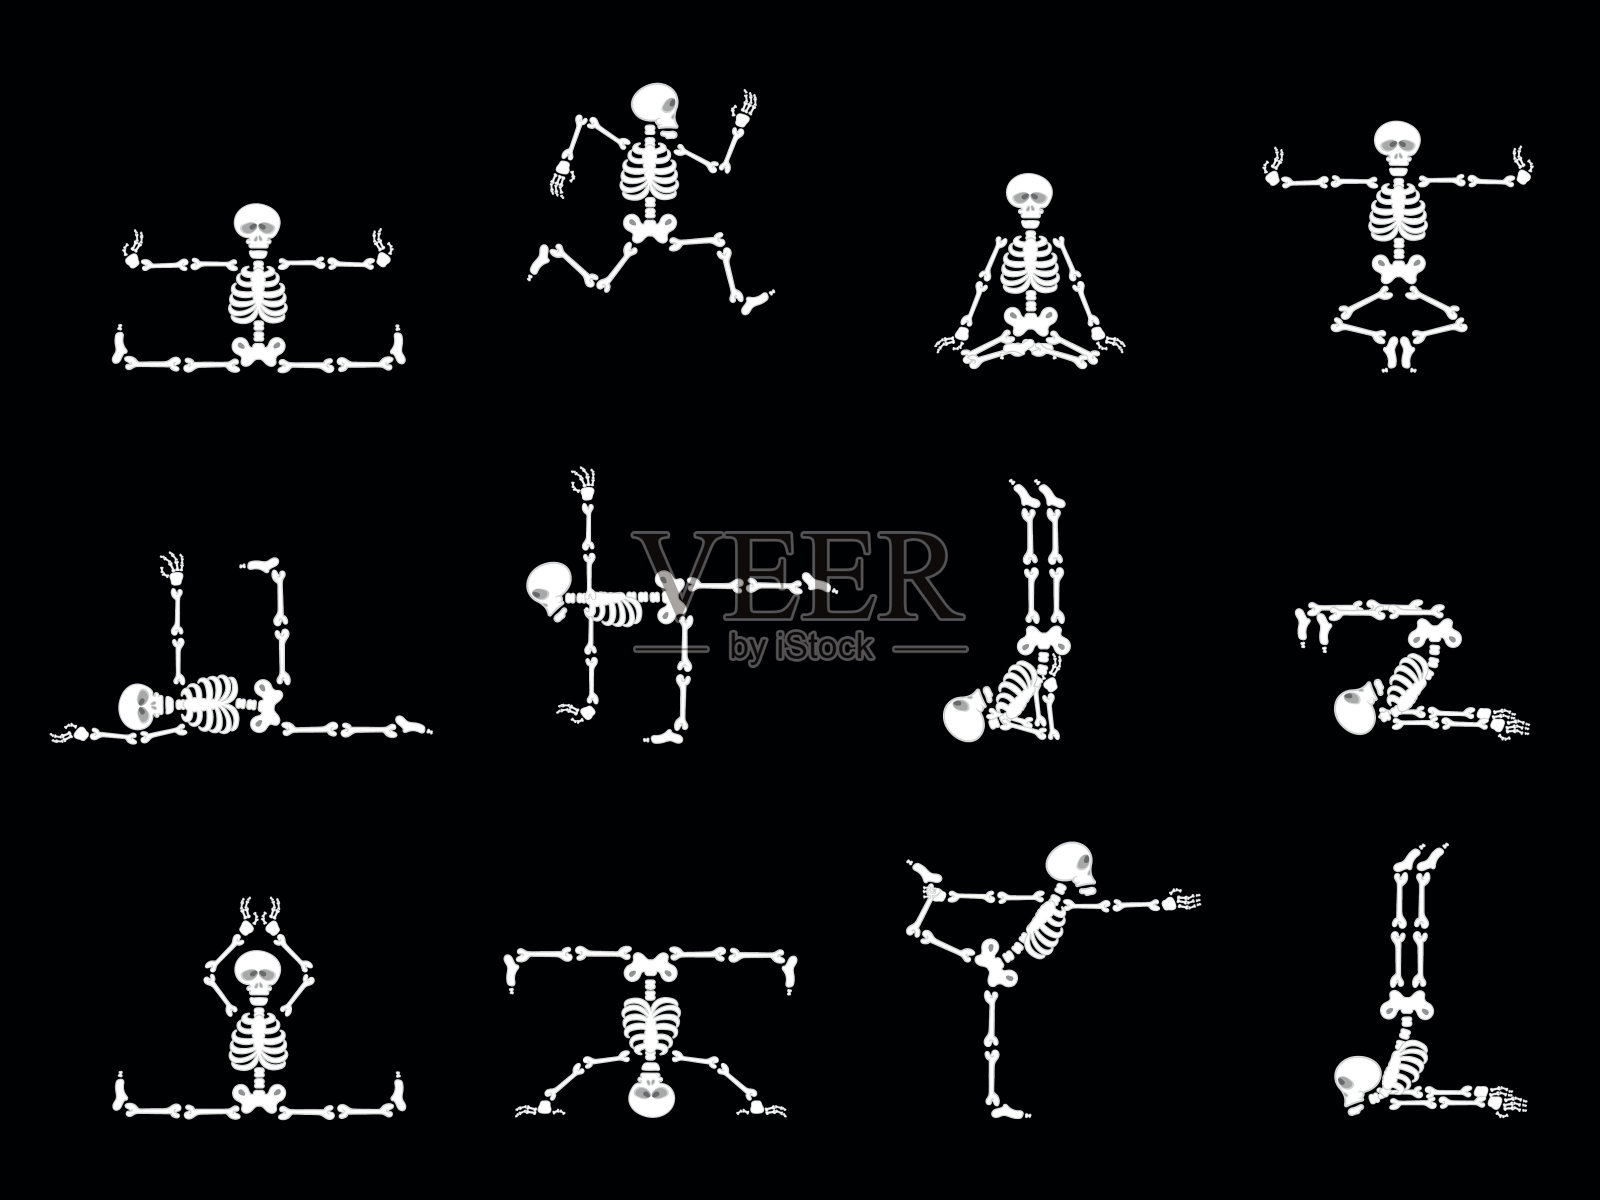 布景设计元素:滑稽骨架-舞蹈和瑜伽设计元素图片